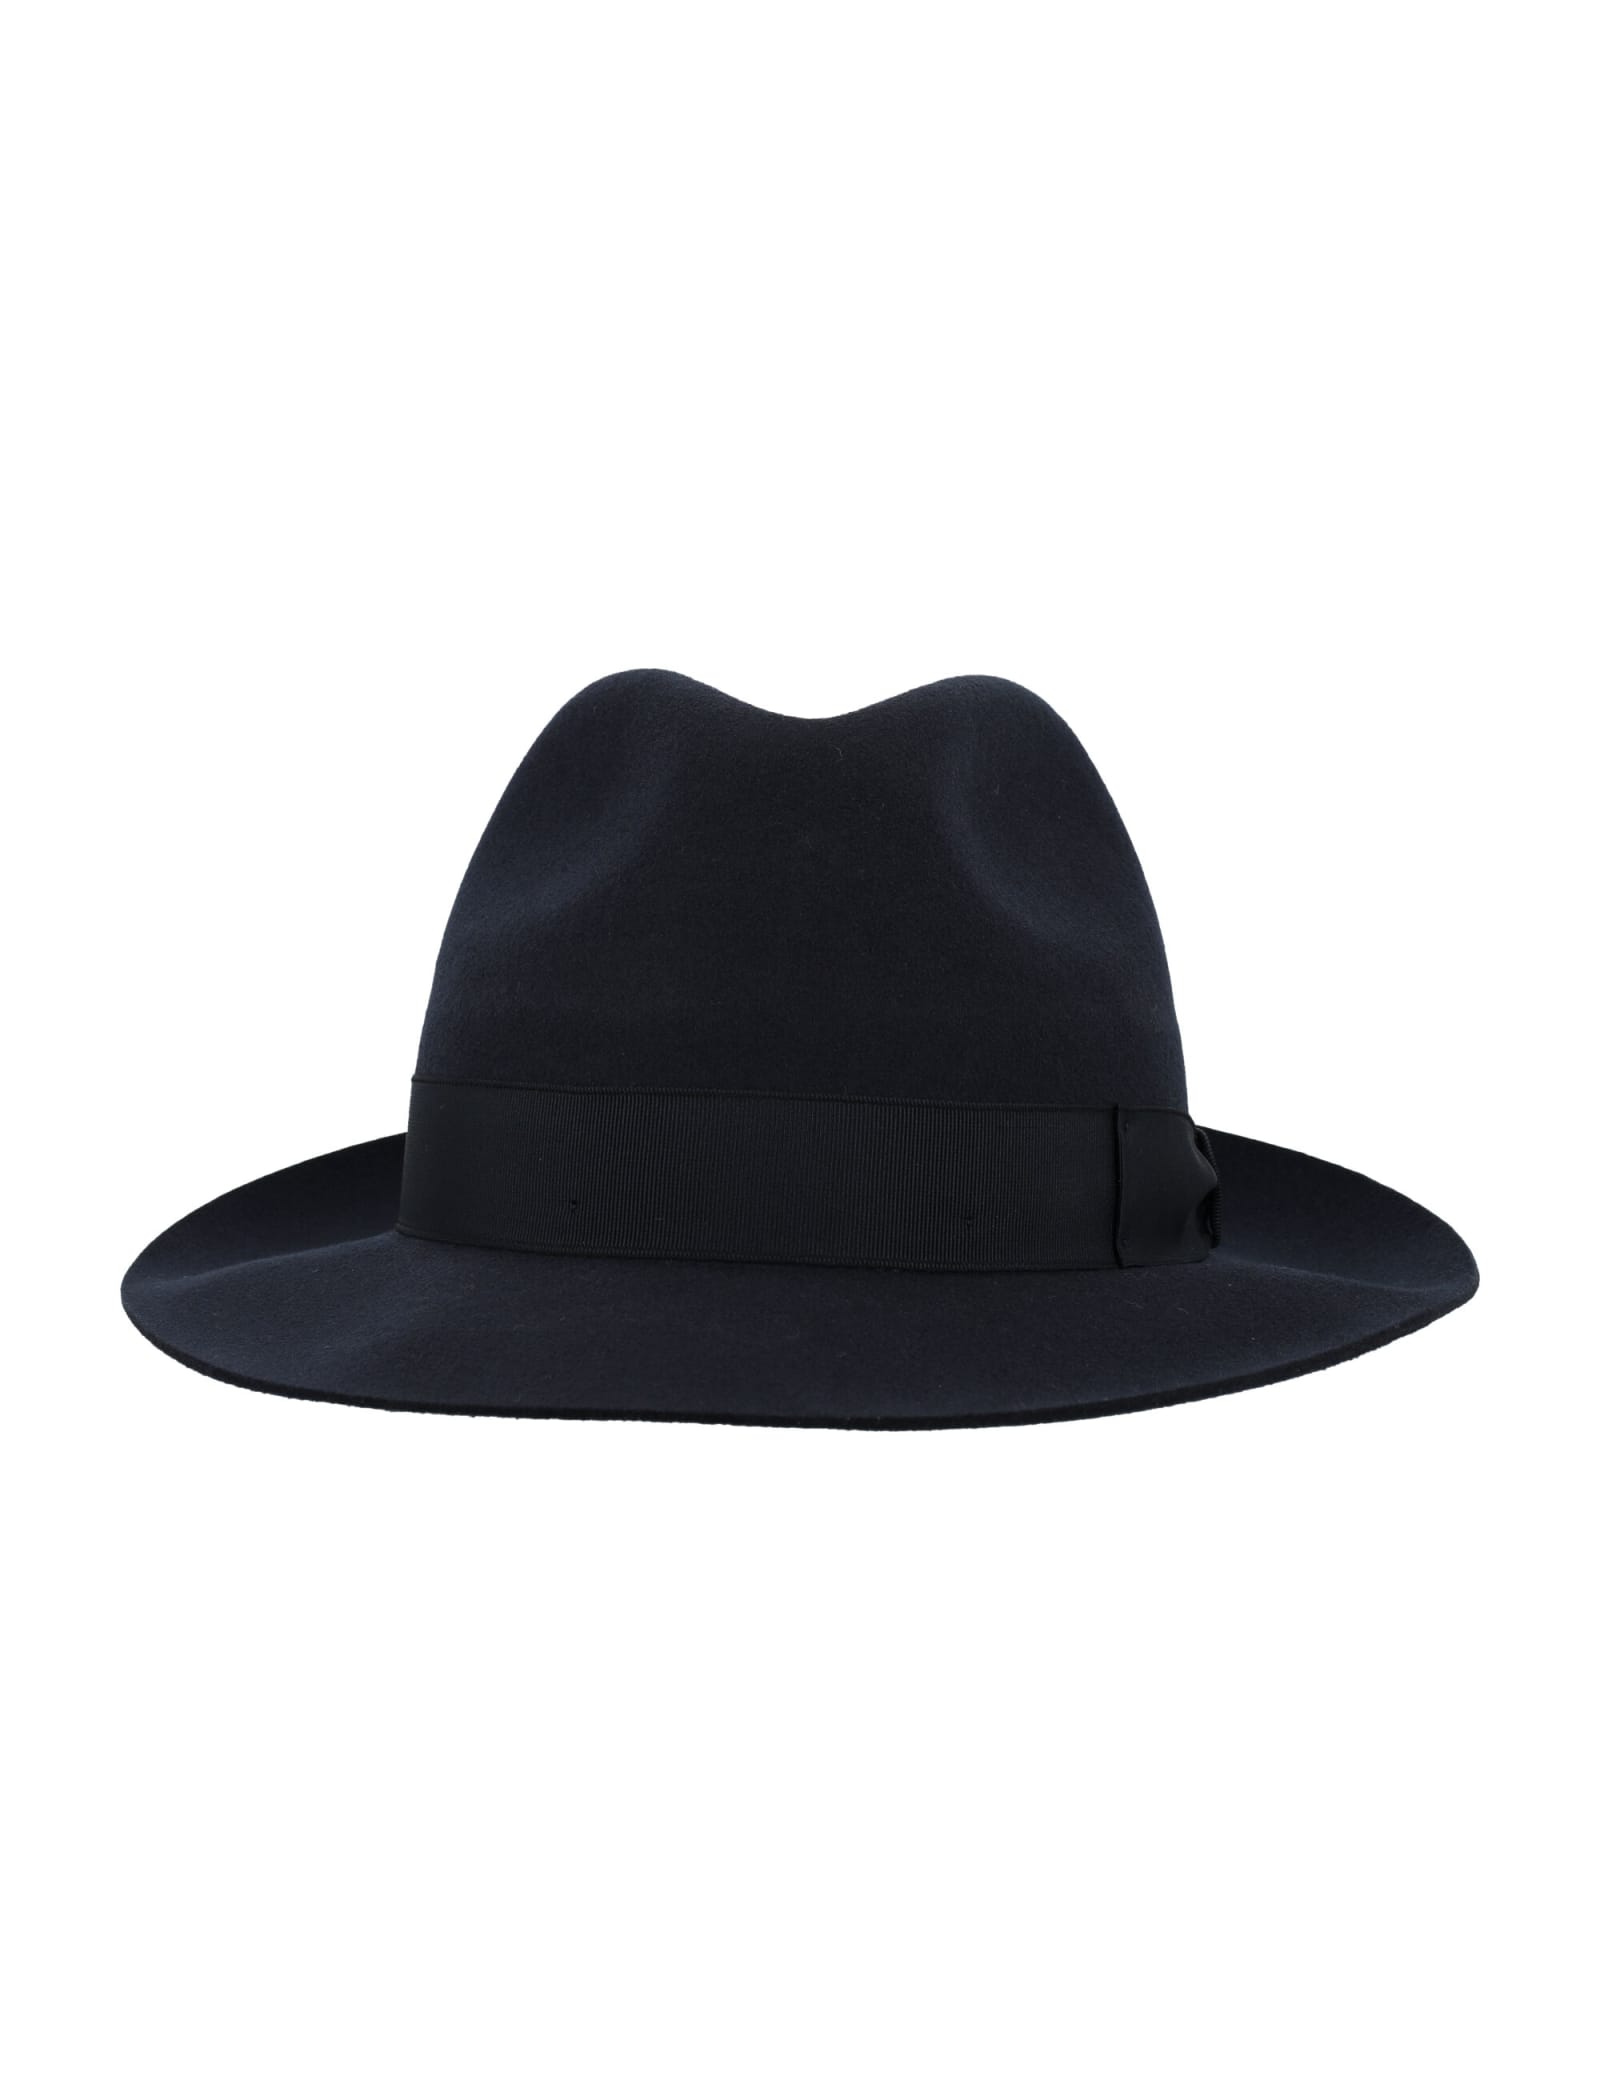 Borsalino Alessandria Felt Medium Brim Fedora Hat